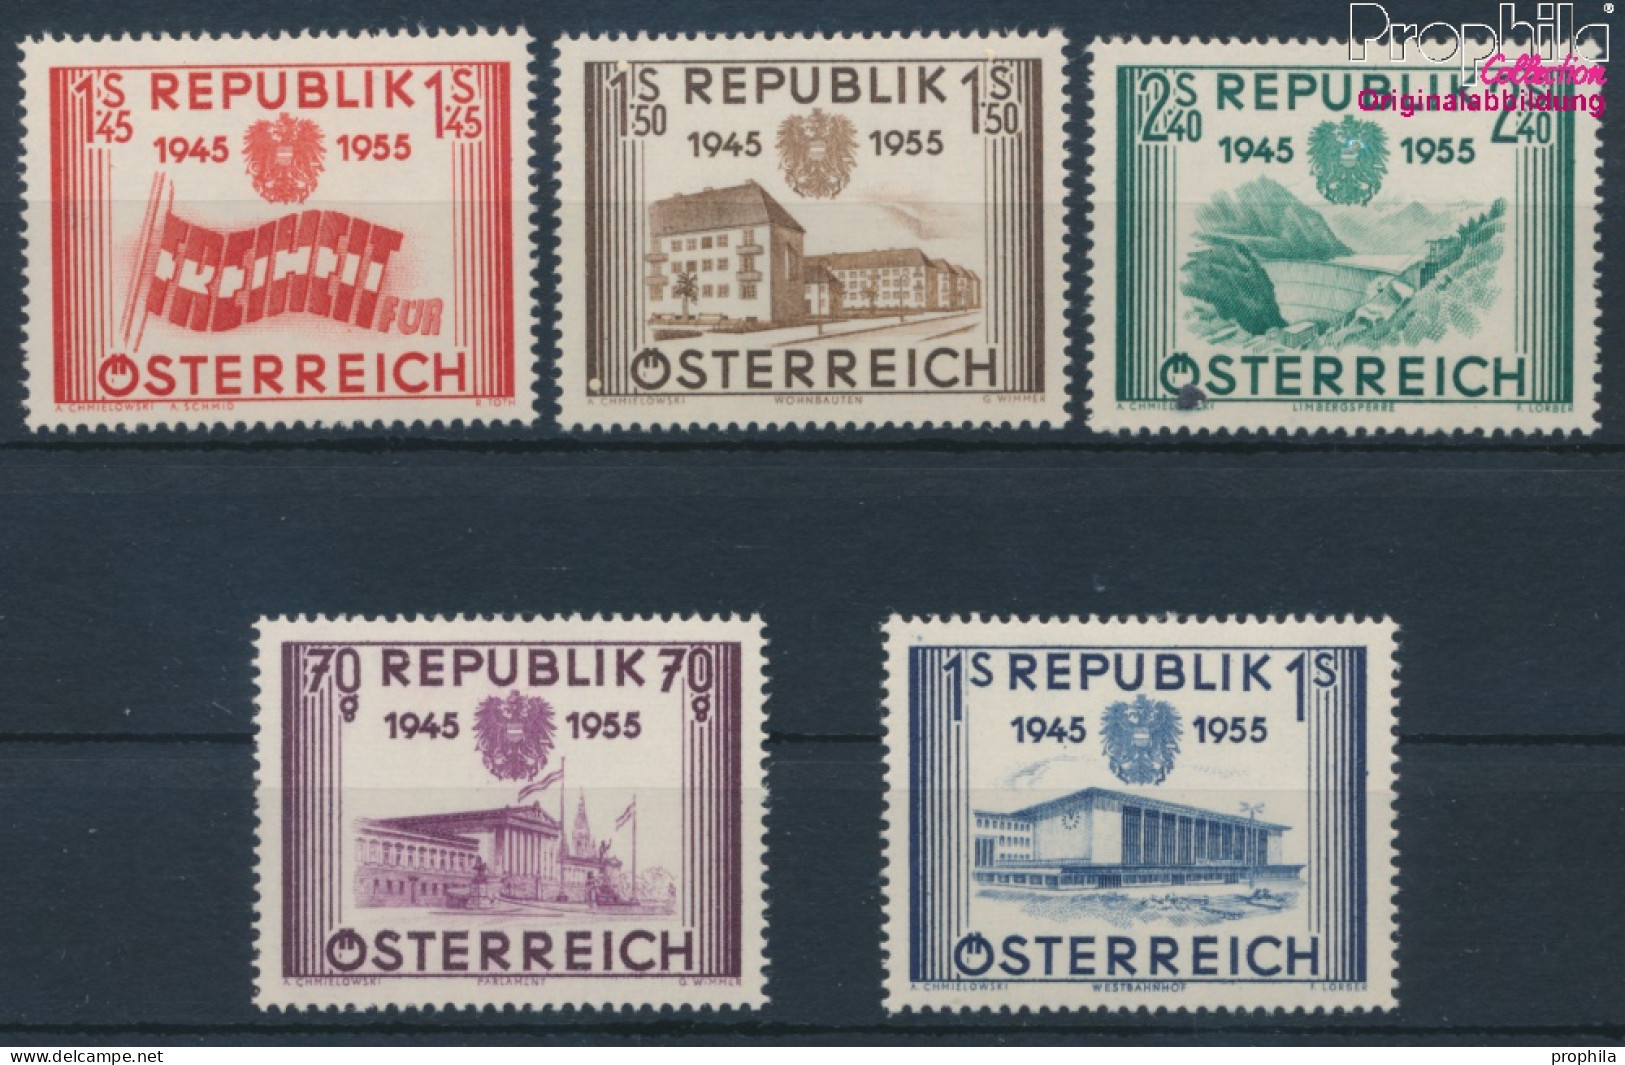 Österreich 1012-1016 (kompl.Ausg.) Postfrisch 1955 Unabhängigkeit (10405426 - Neufs